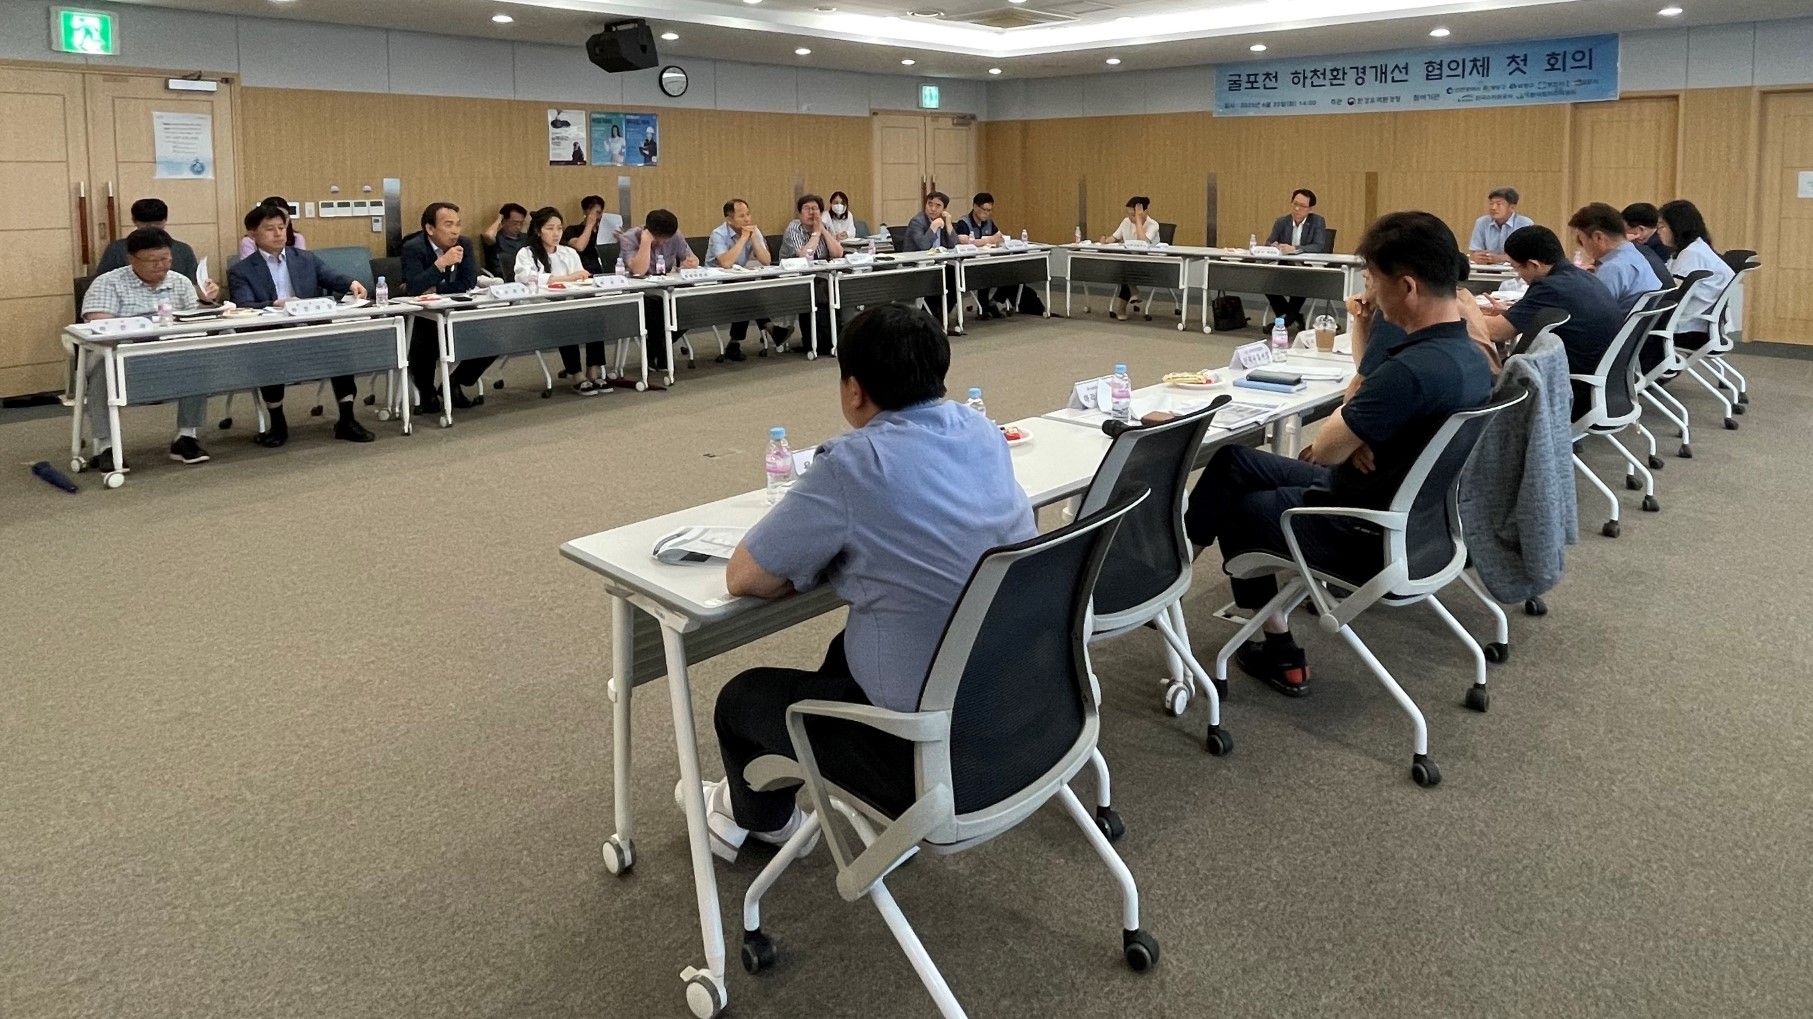 6월 20일, 인천광역시 서구 한국수자원공사 아라뱃길지사에서 열린 굴포천 하천환경개선 협의체 첫 회의에서 참석자들이 운영 방안을 논의하고 있다